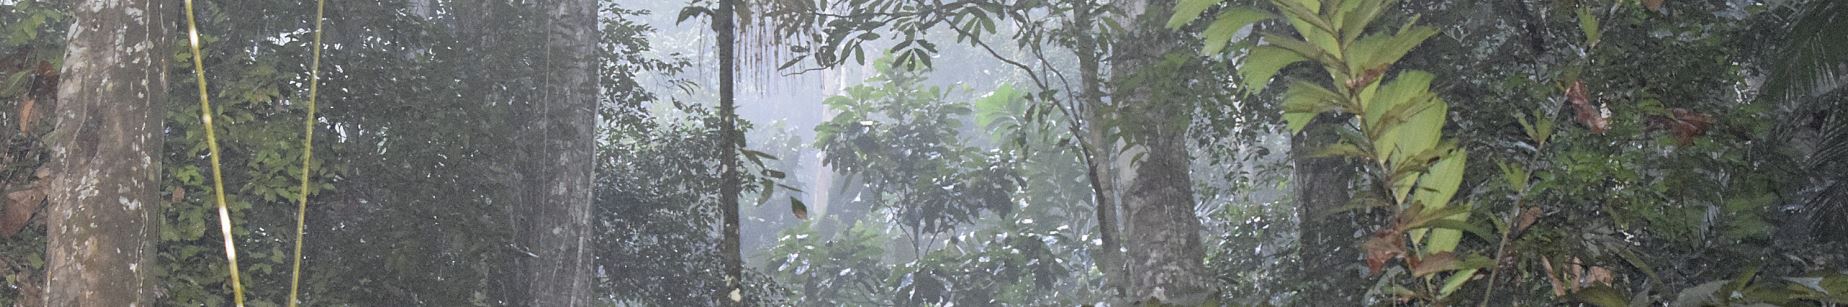 Guyana Rain Forest